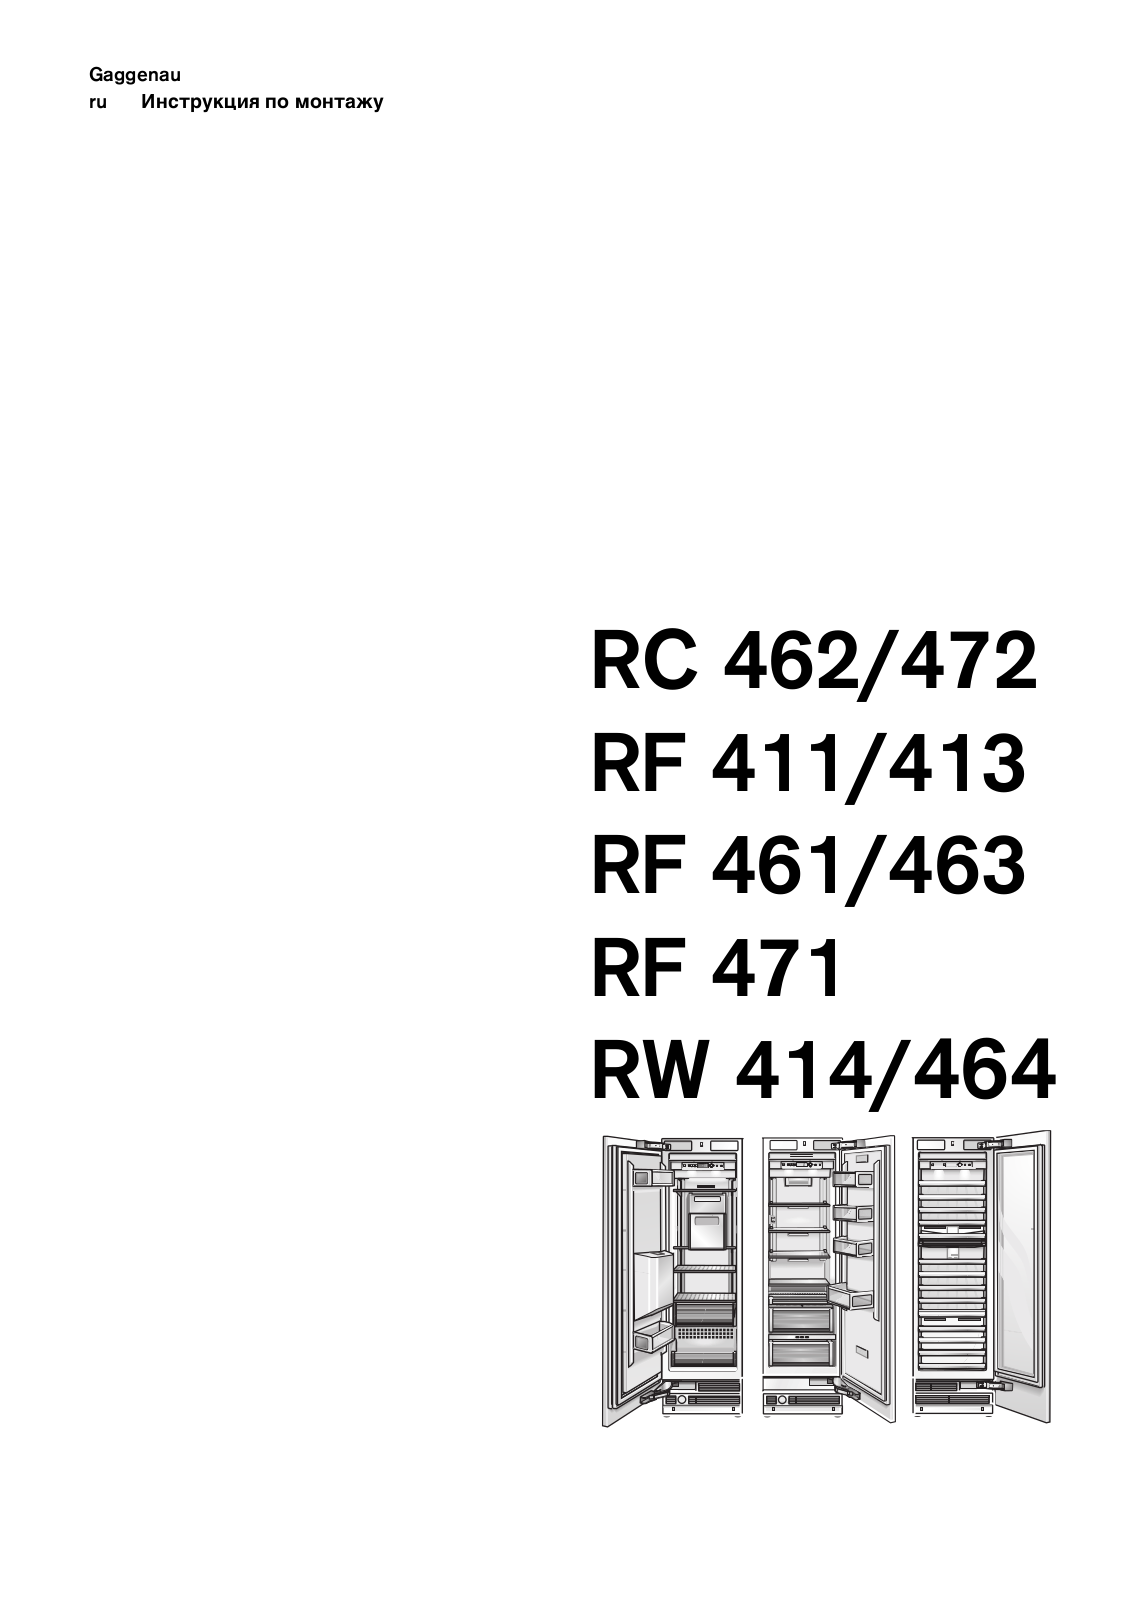 Gaggenau RC 462-200, RC 472-200, RF 411-200, RF 411-301, RF 461-200 User Manual